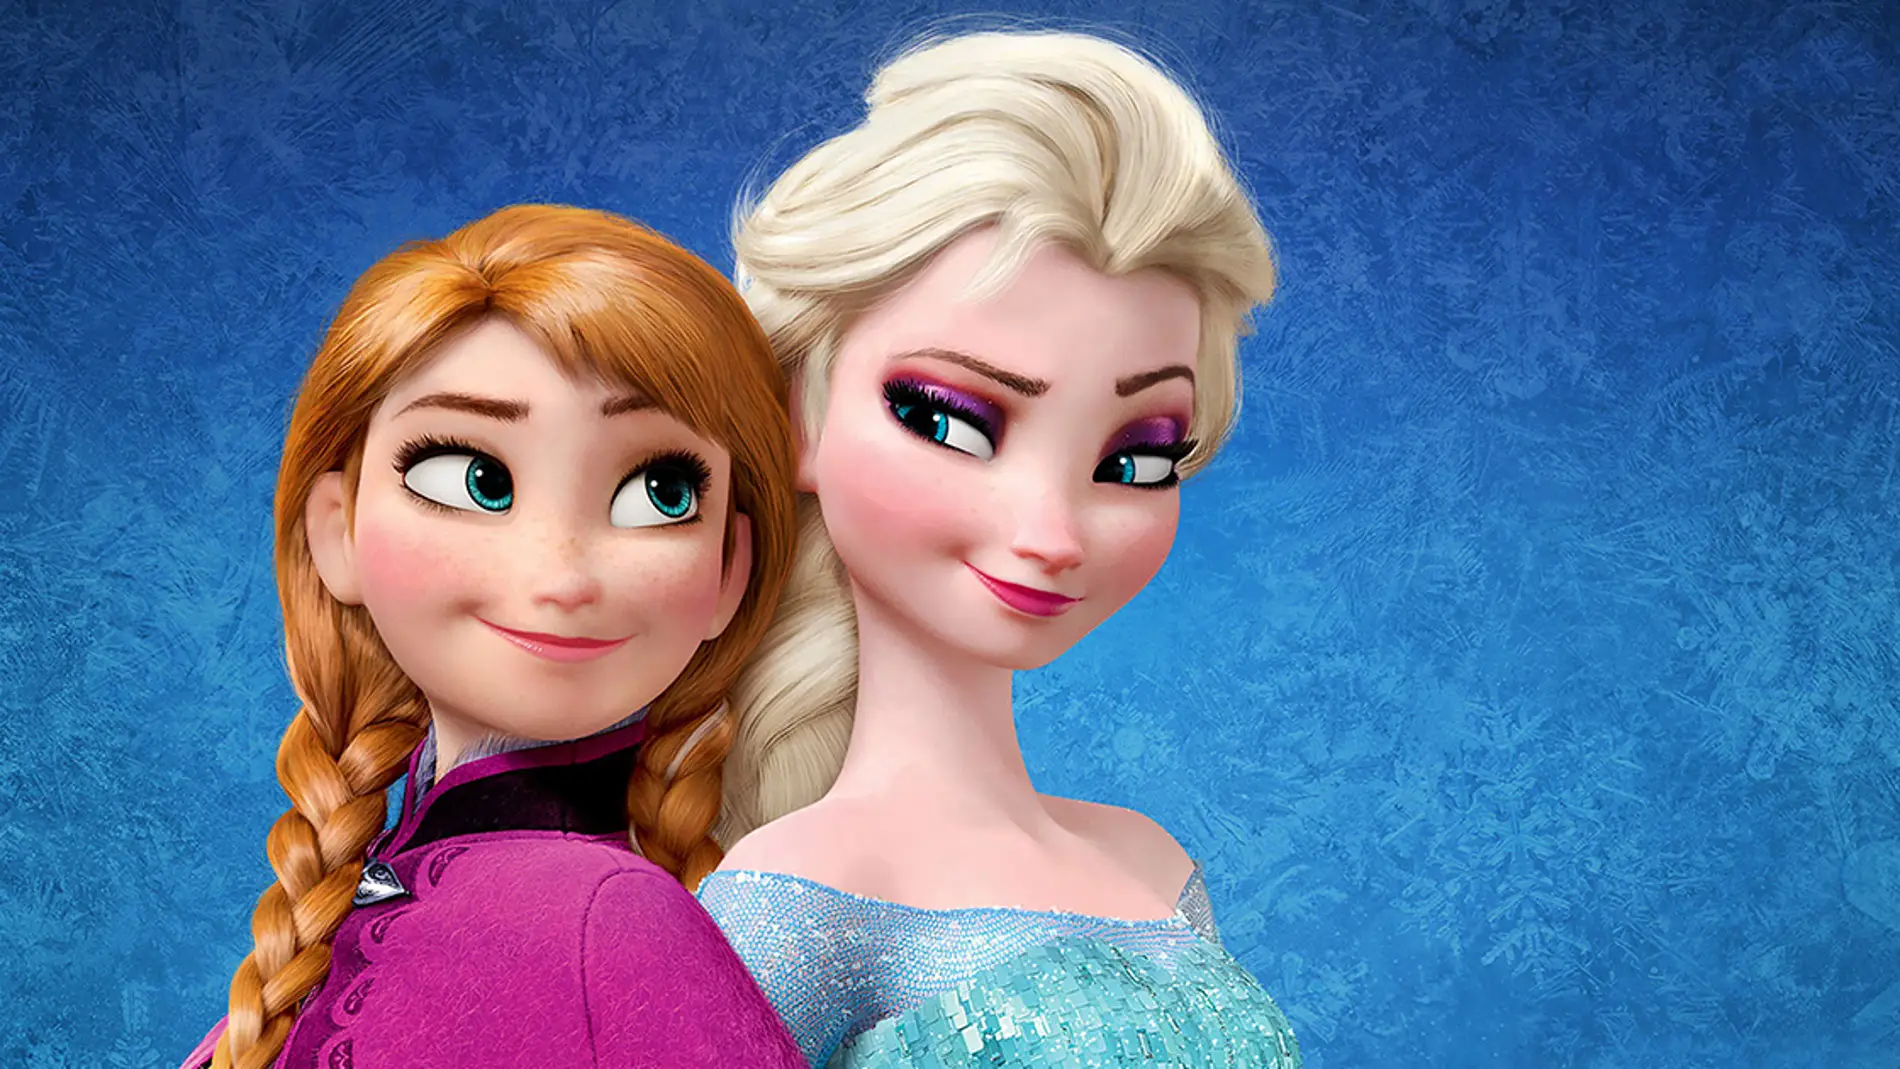 Niños Peatonal taburete Frozen 2': Disney descongela la secuela de 'Frozen' y empieza su rodaje